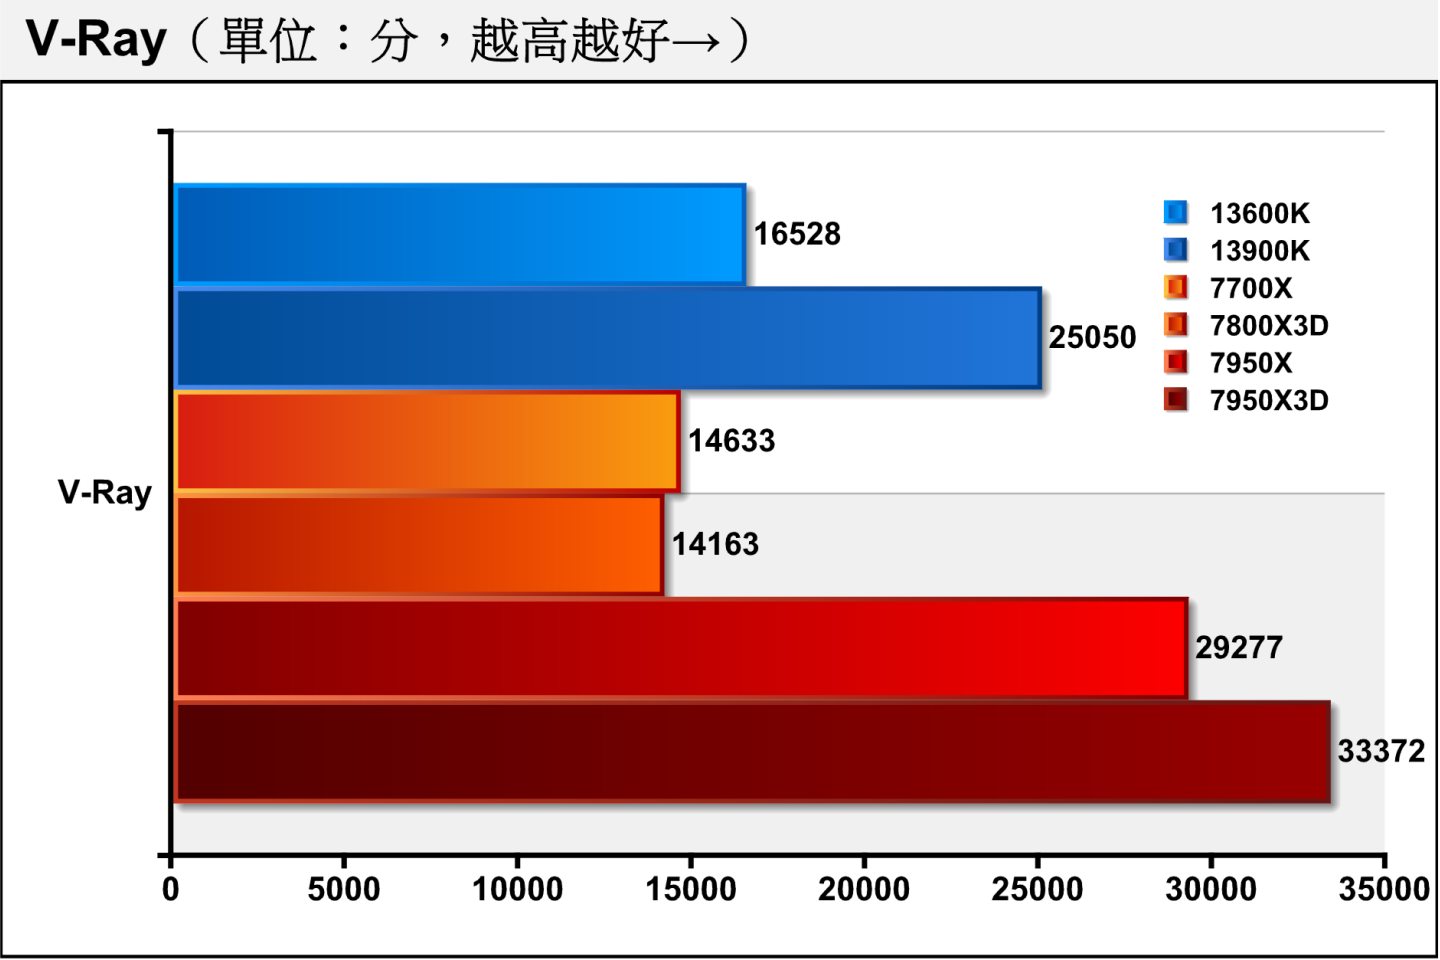 在V-Ray光線追蹤渲染測試部分，7800X3D無法像7950X3D超越7950X，而是以3.22%的幅度落後於7700X。